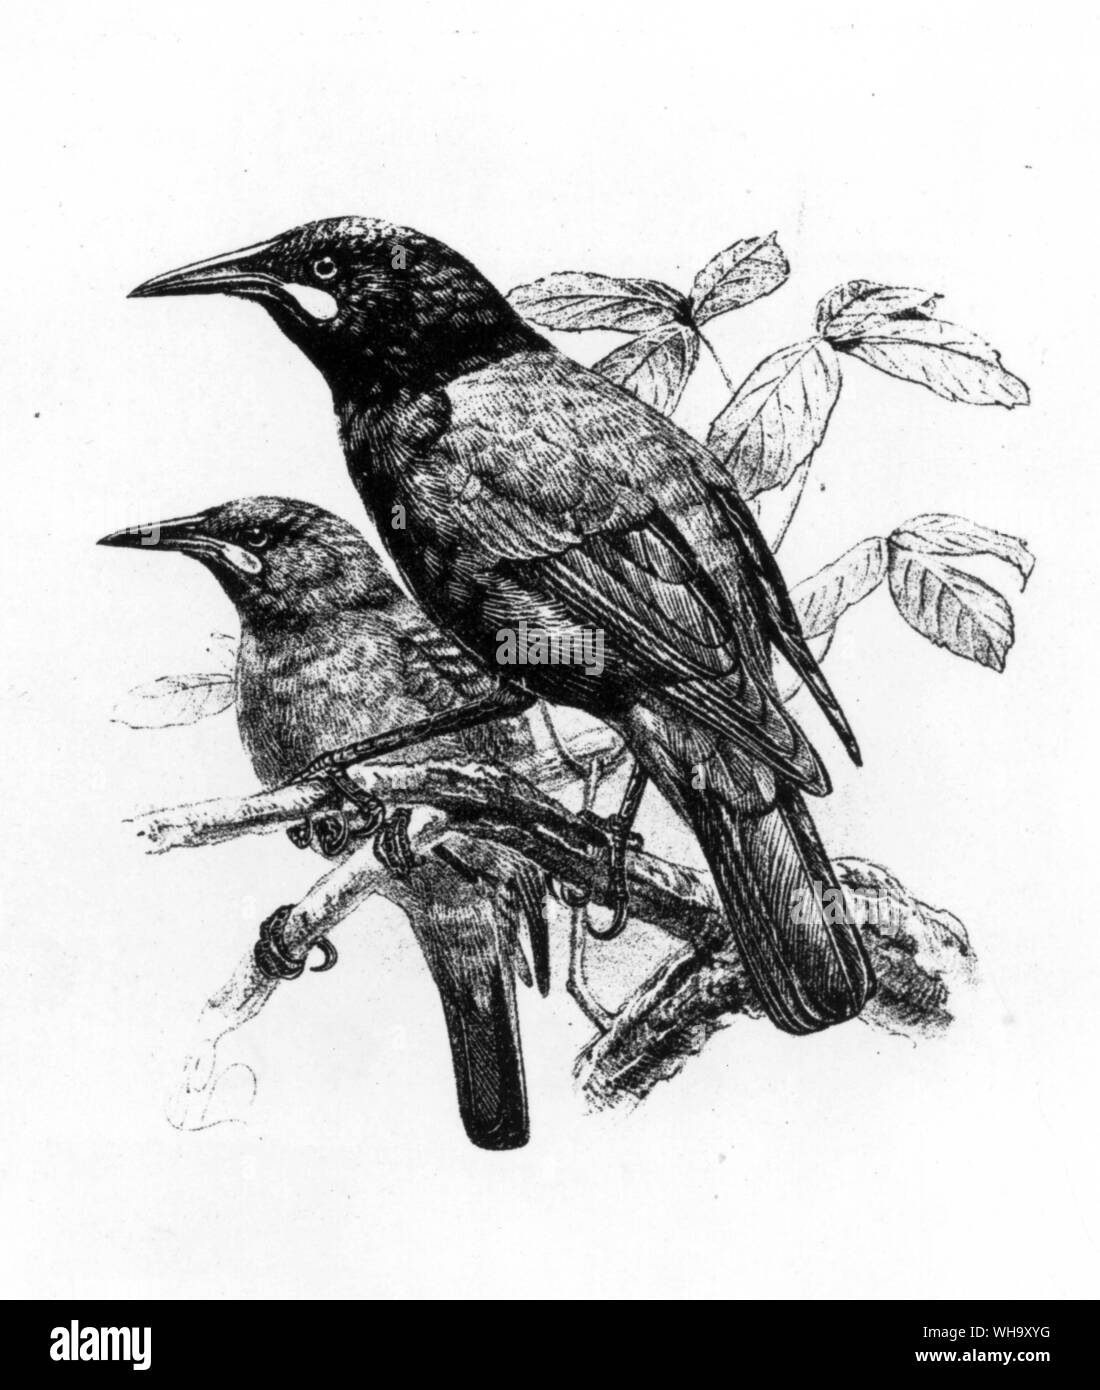 Saddlebacks (Philesturnus carunculatus). Cette espèce de Nouvelle-Zélande était autrefois commun sur le continent mais le Nord et l'île du Sud maintenant survivre uniquement sur les courses des sanctuaires de l'île au large. Gravure d'après un dessin de J.G. Keulemans de W.I. Buller Histoire des oiseaux de Nouvelle-Zélande (Wellington, 1882) Banque D'Images